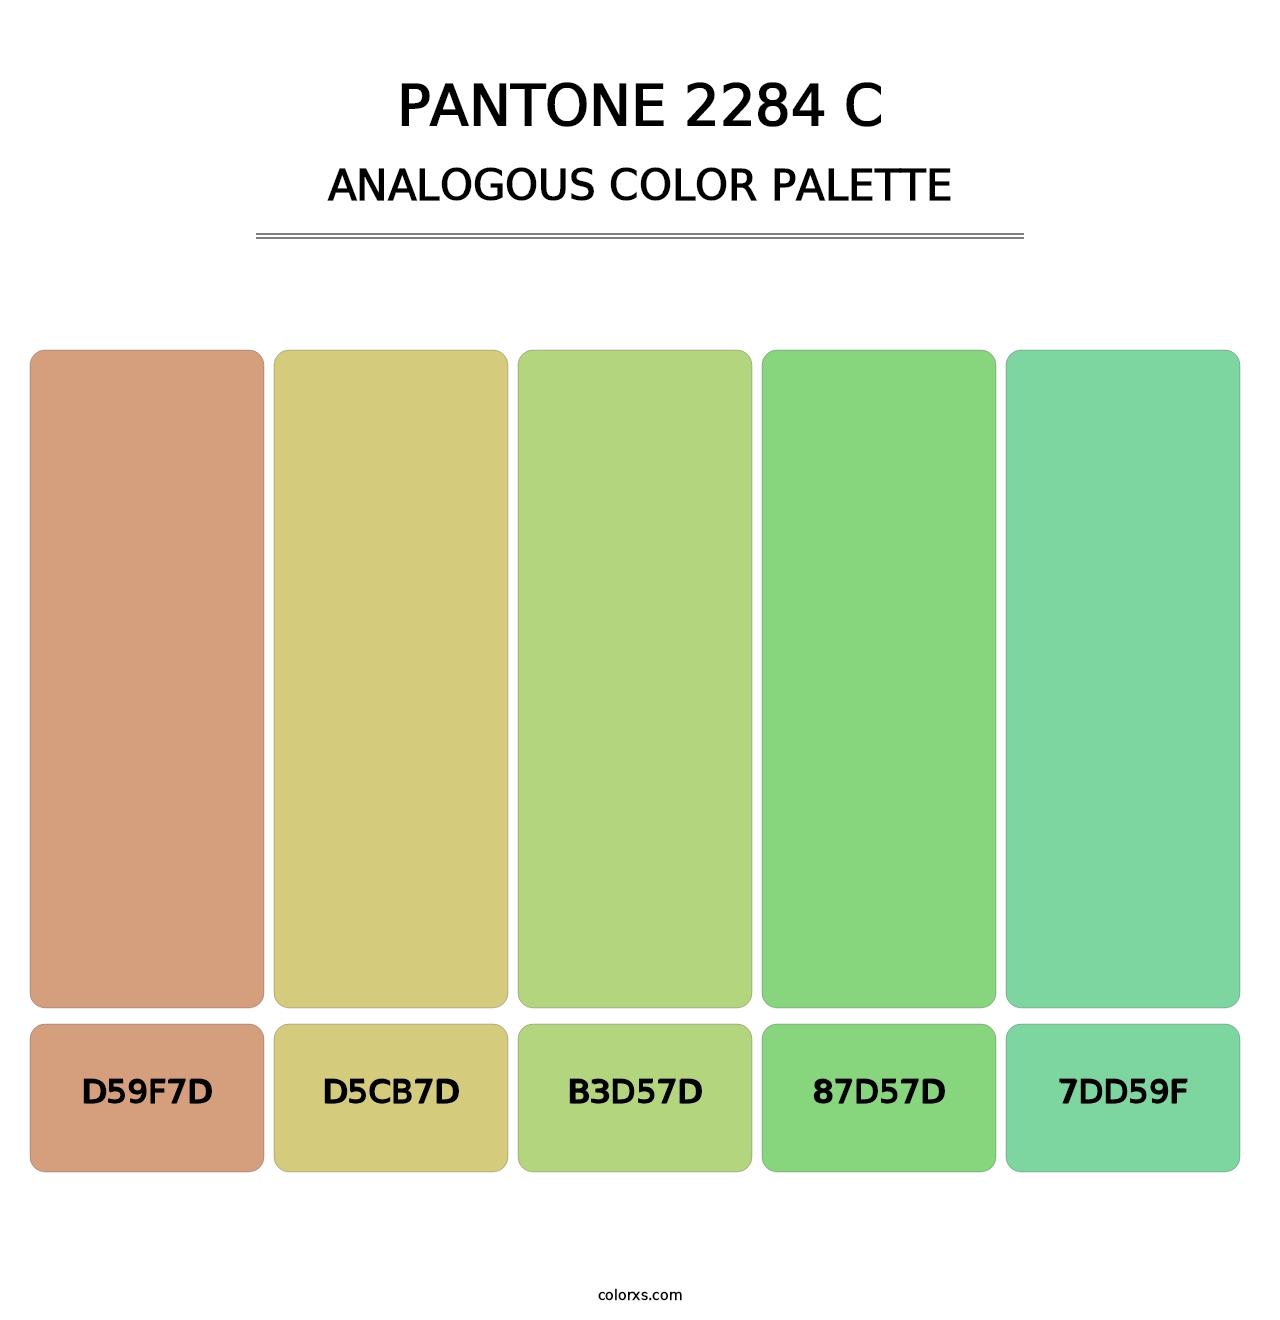 PANTONE 2284 C - Analogous Color Palette